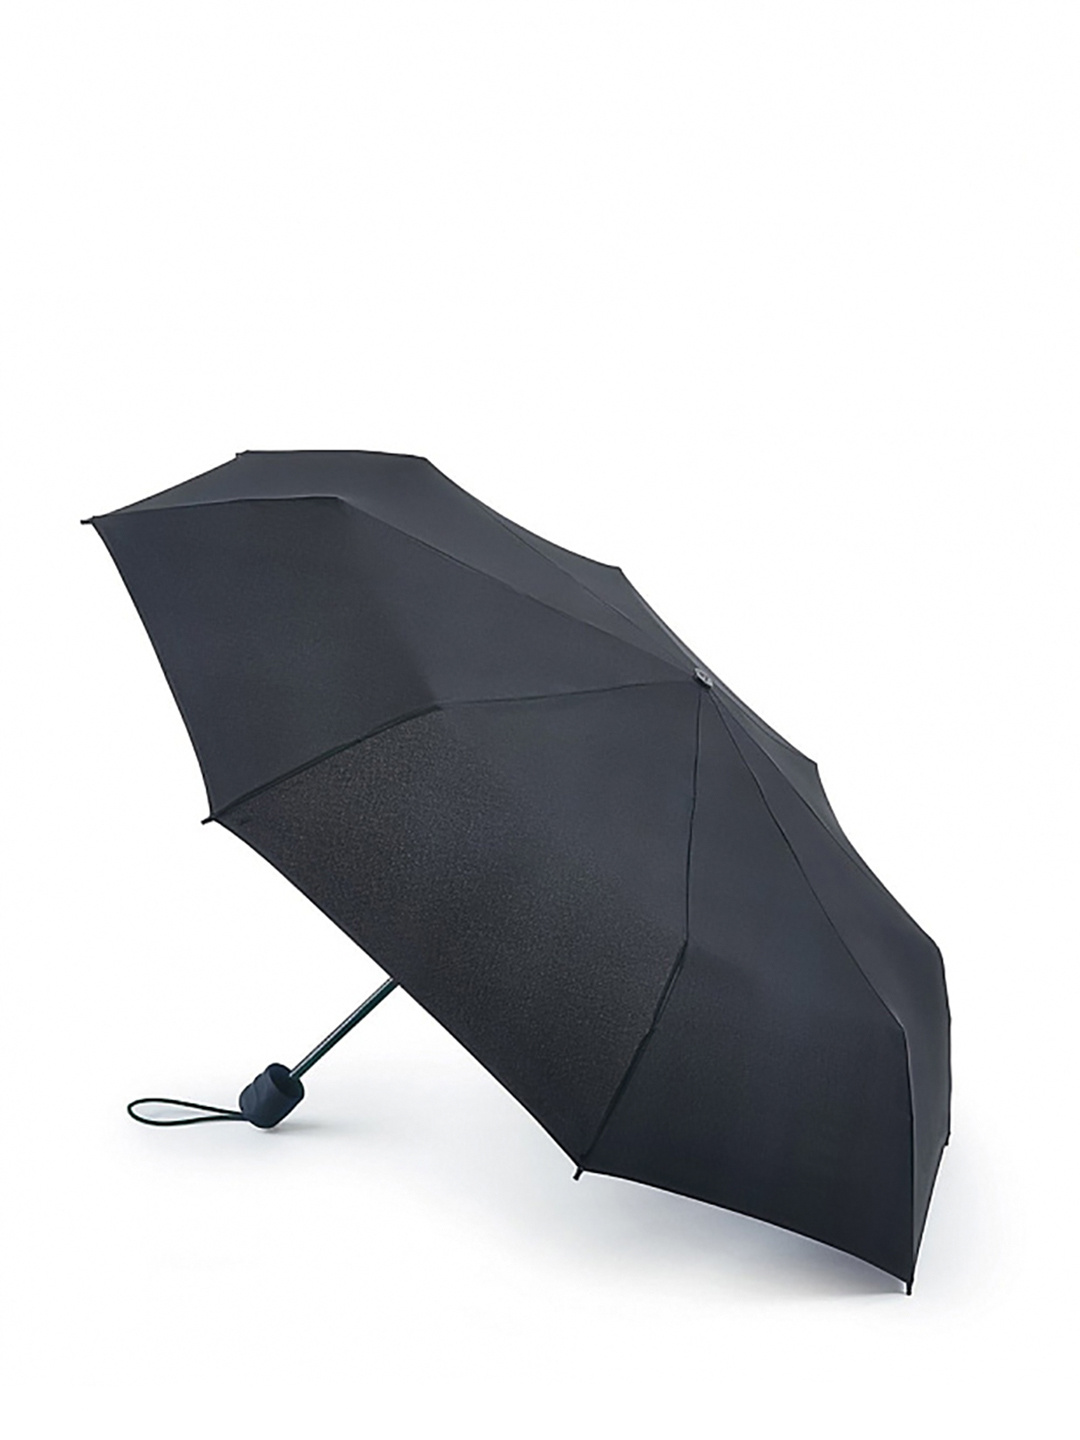 Фото Компактный зонт-механика для сложных погодных условий 